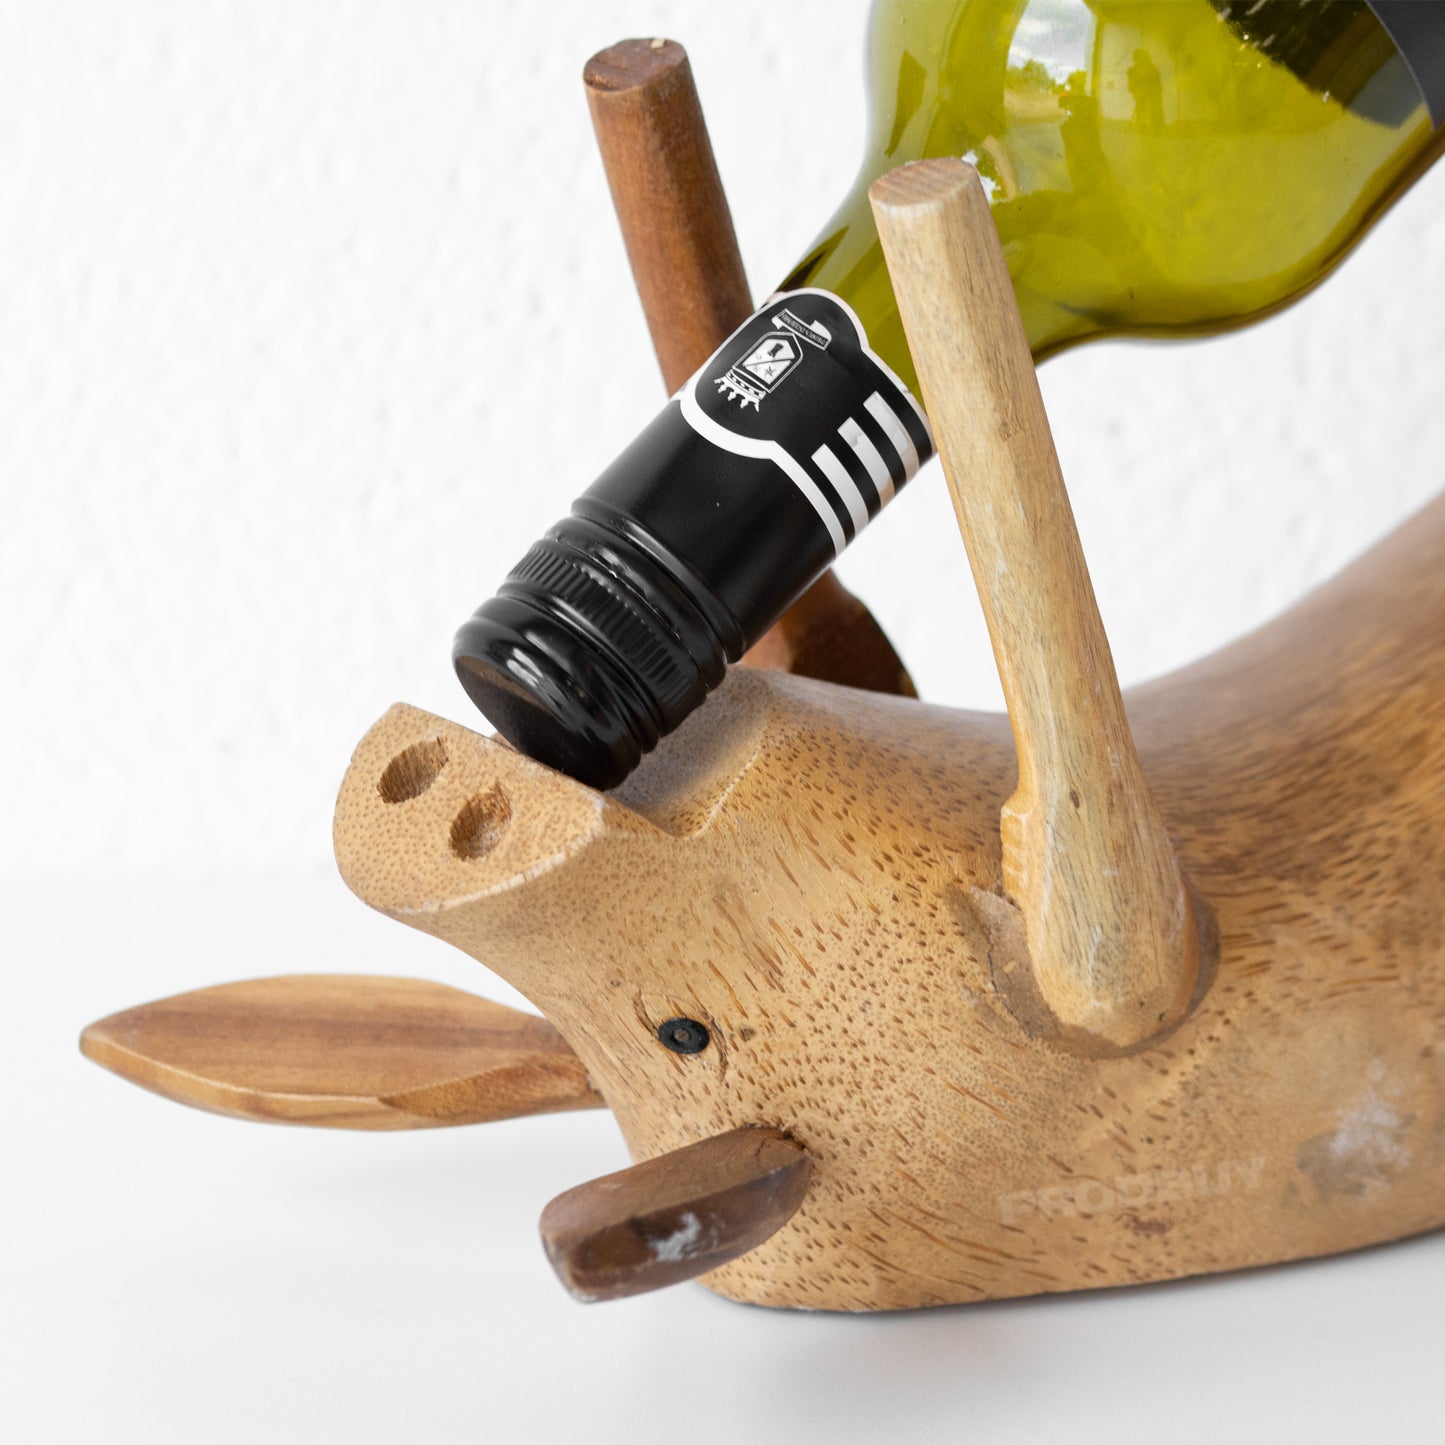 Drunken Pig Wooden Wine Bottle Holder Ornament